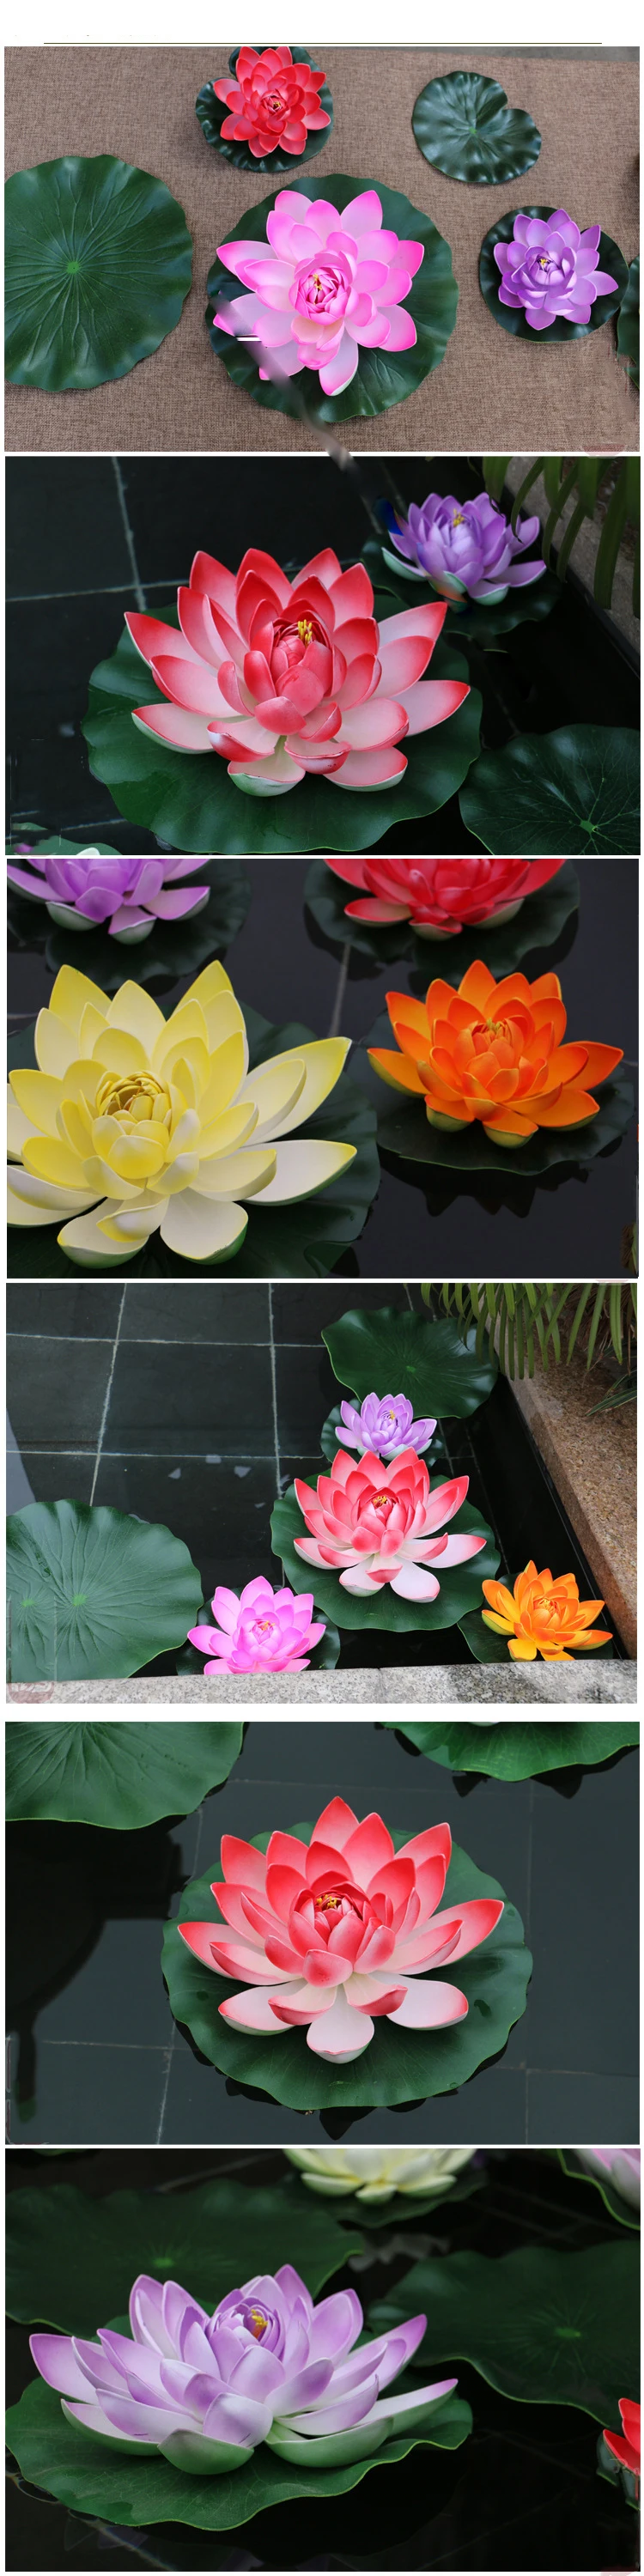 Аквариум плавающий Лотос искусственный цветок пруд растение орнамент аквариум домашний сад украшение 1 шт. 10 см